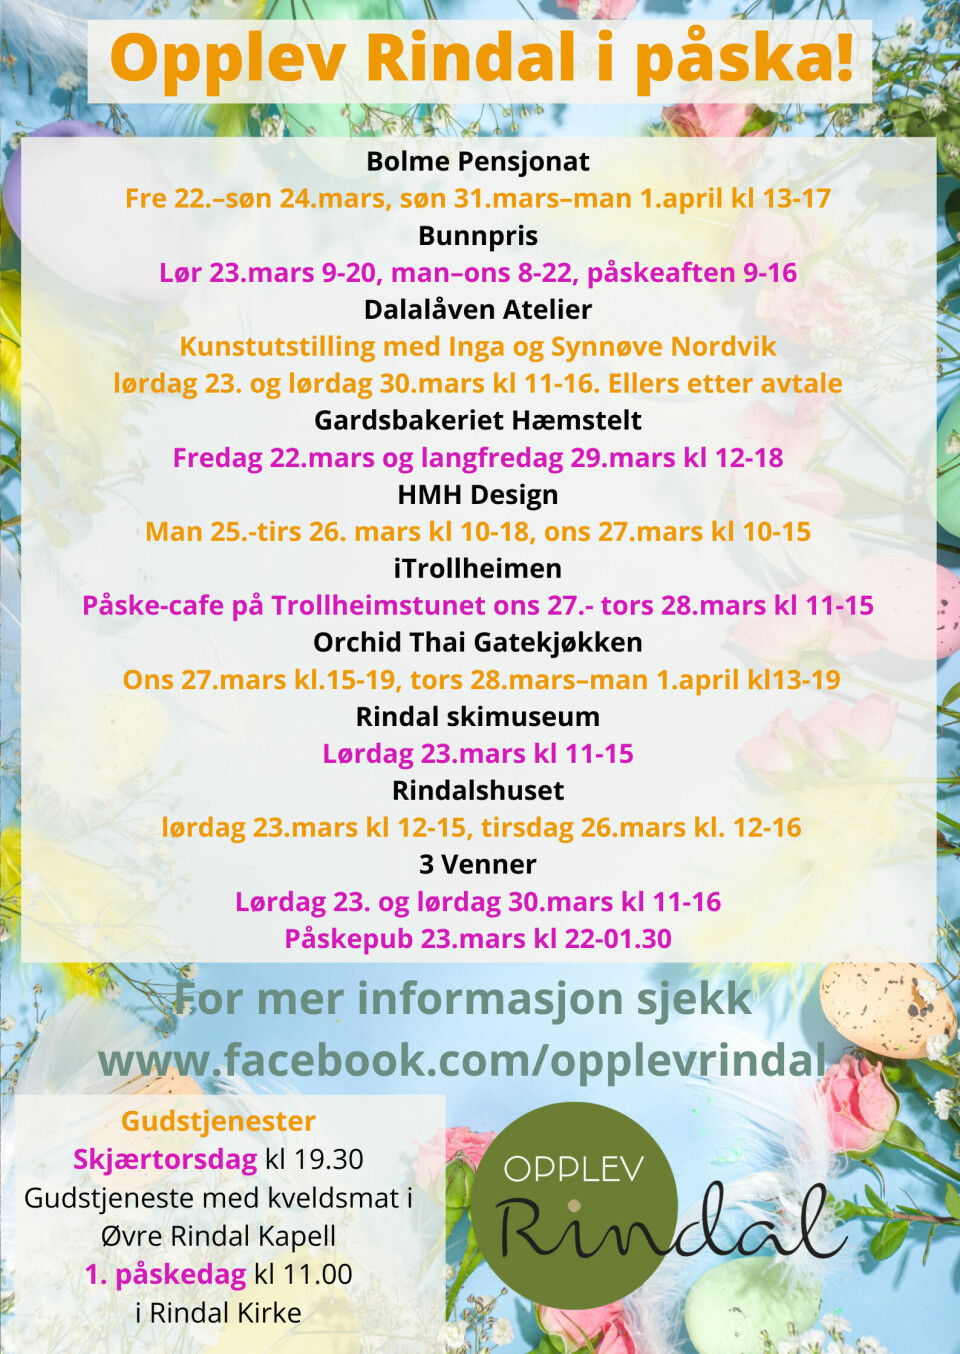 En plakat med diverse program for opplev Rindal i påska